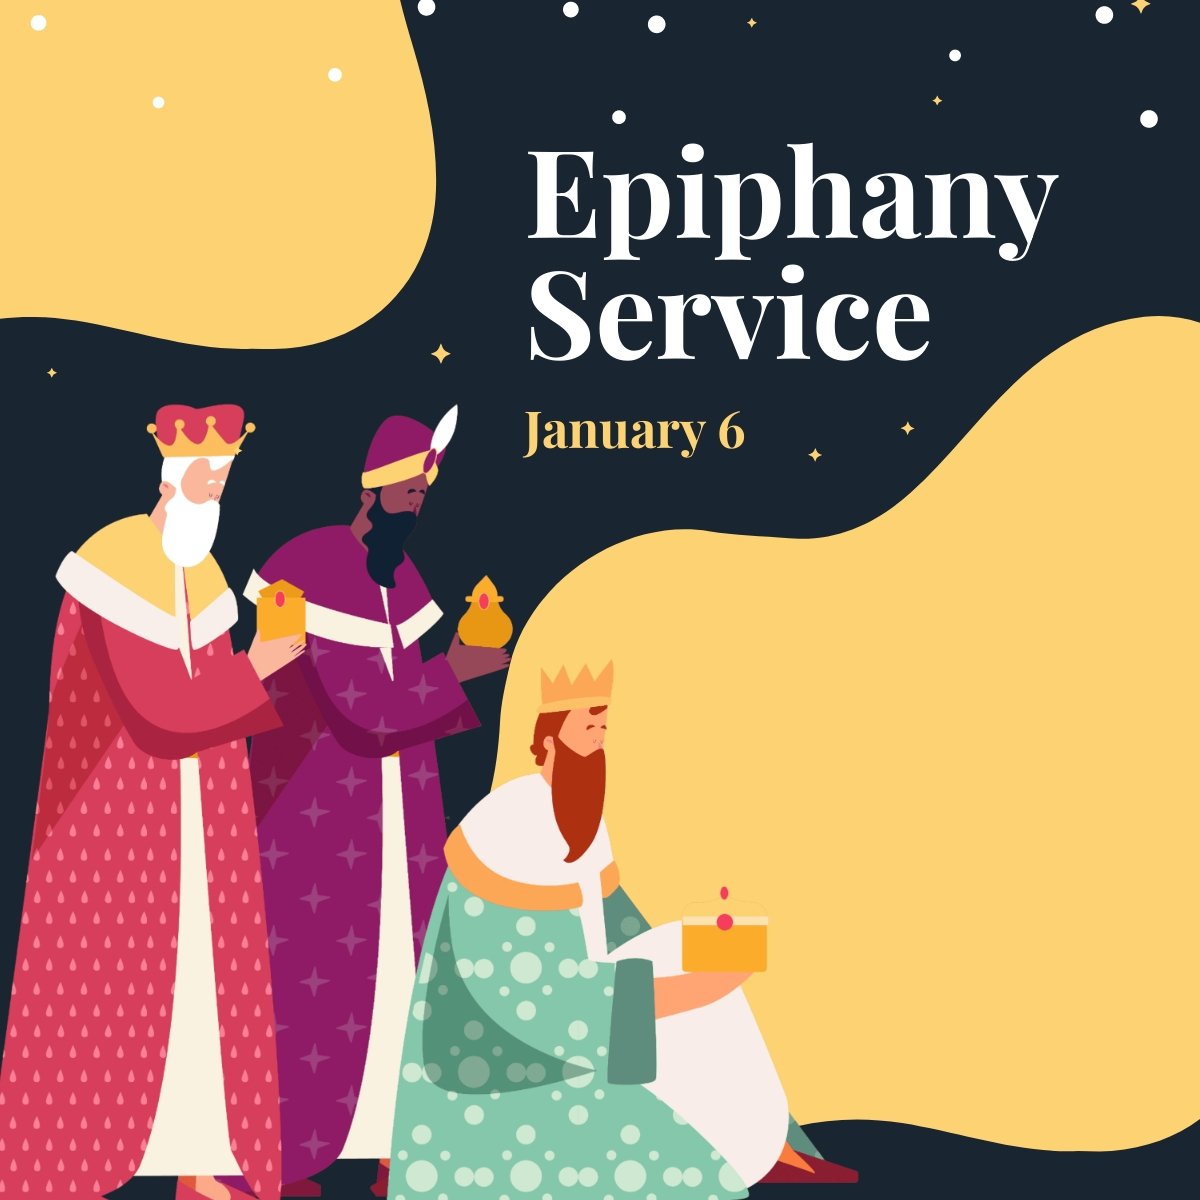 Epiphany Service Linkedin Post